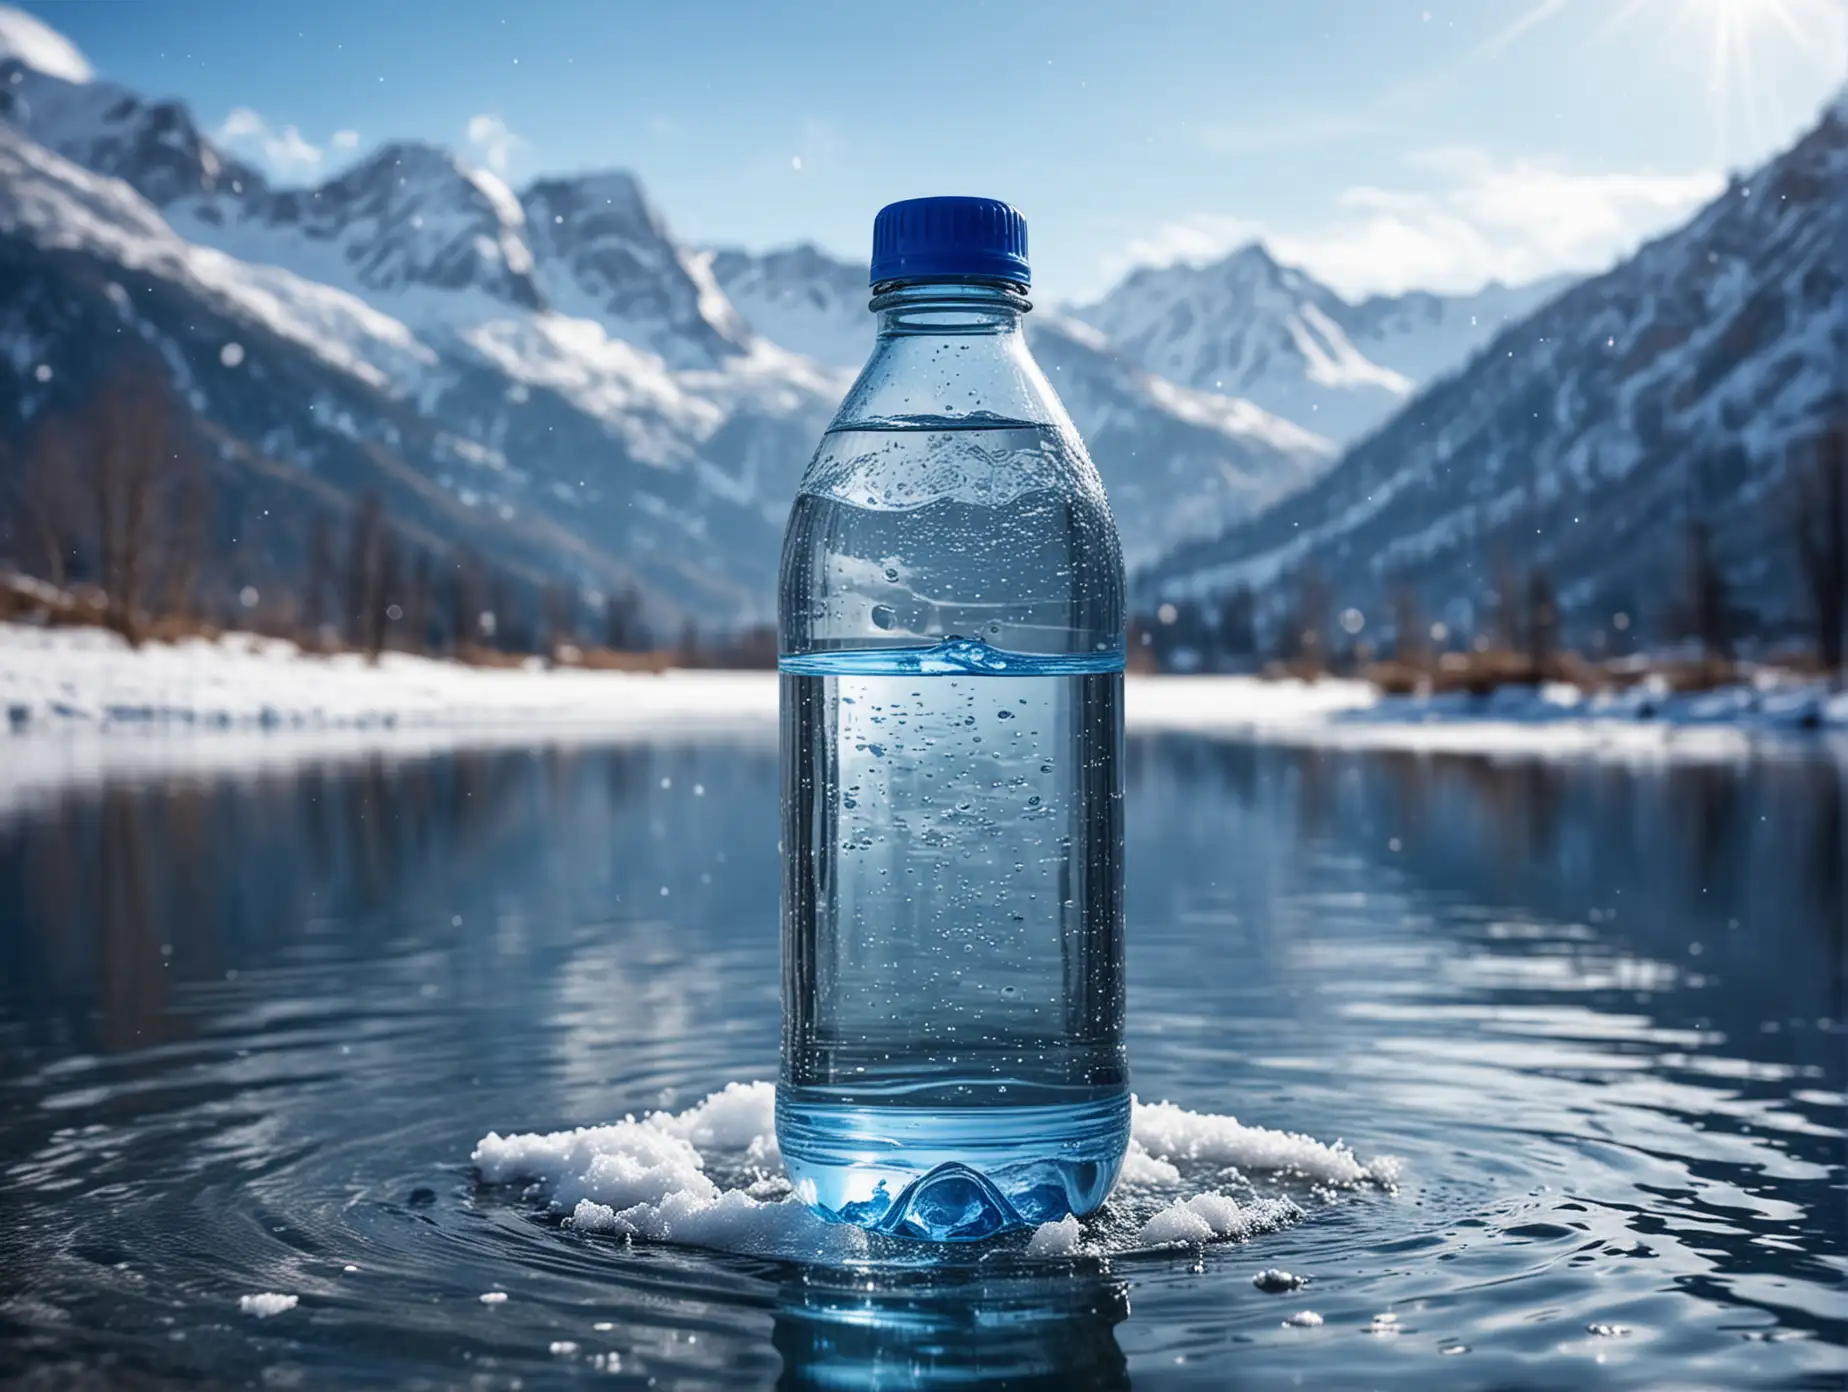 бутылка воды 0,5, стекло, стоит в воде, вокруг небольшие брызги,  на фоне снежных гор  и чистой воды, природа, чистота, много голубого и синего цвета 